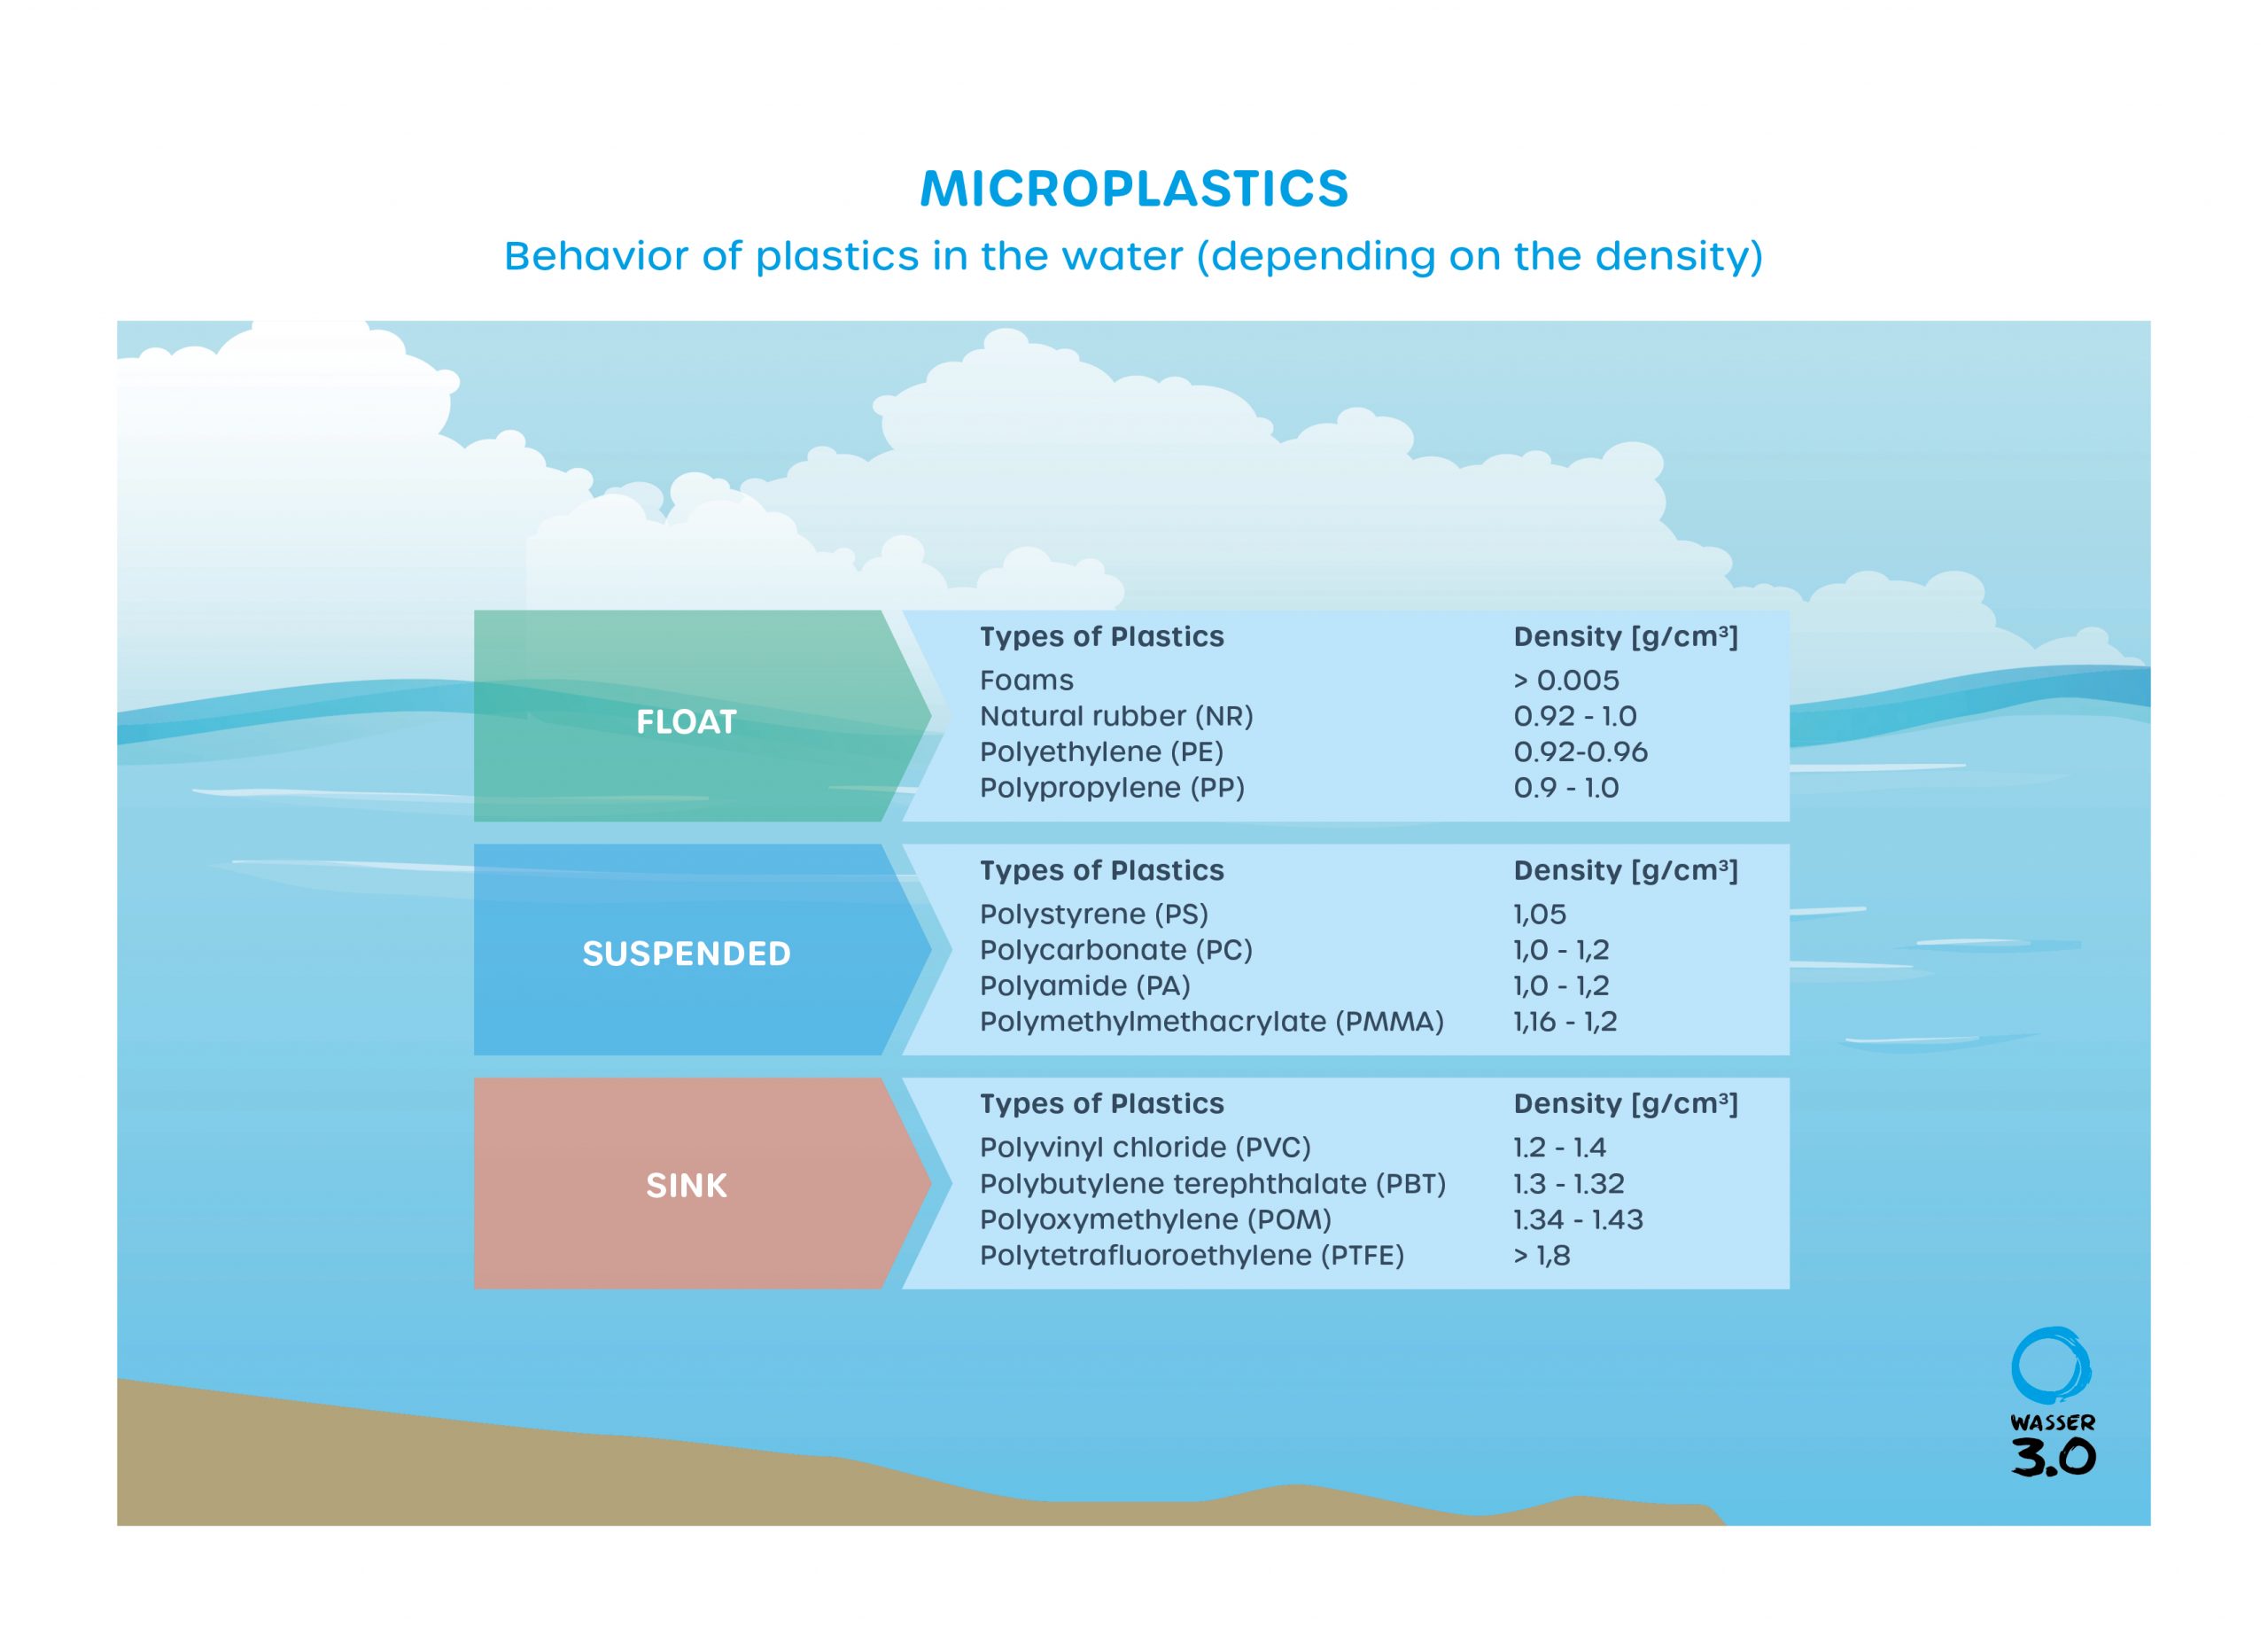 Behavior of plastics in water (depending on density)